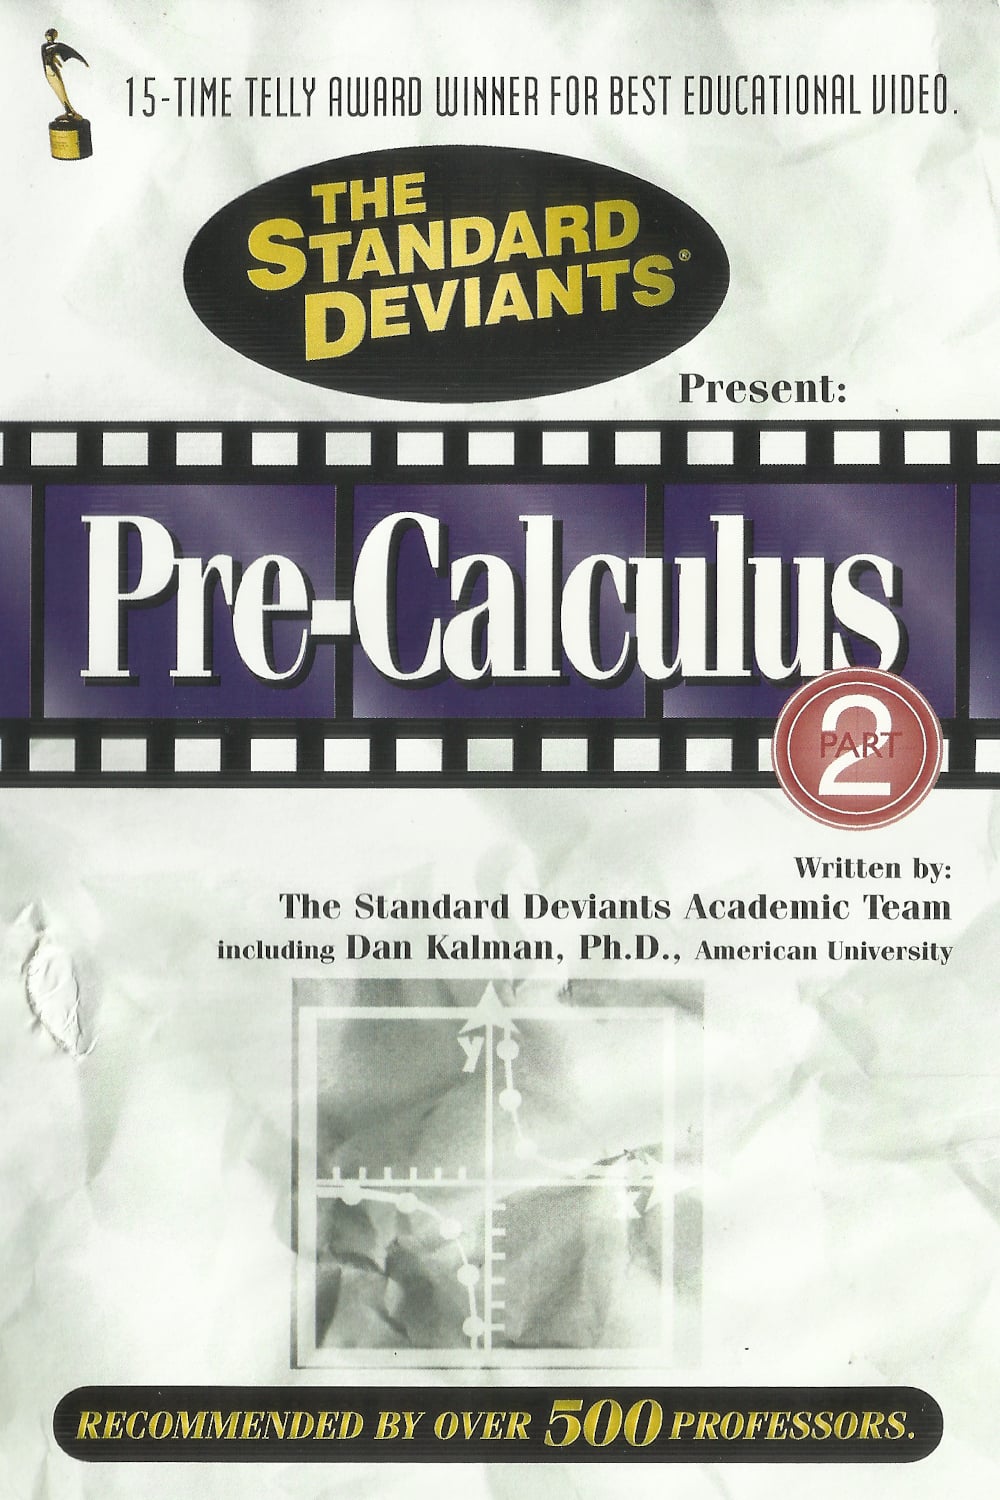 The Standard Deviants: The Dangerous World of Pre-Calculus, Part 2